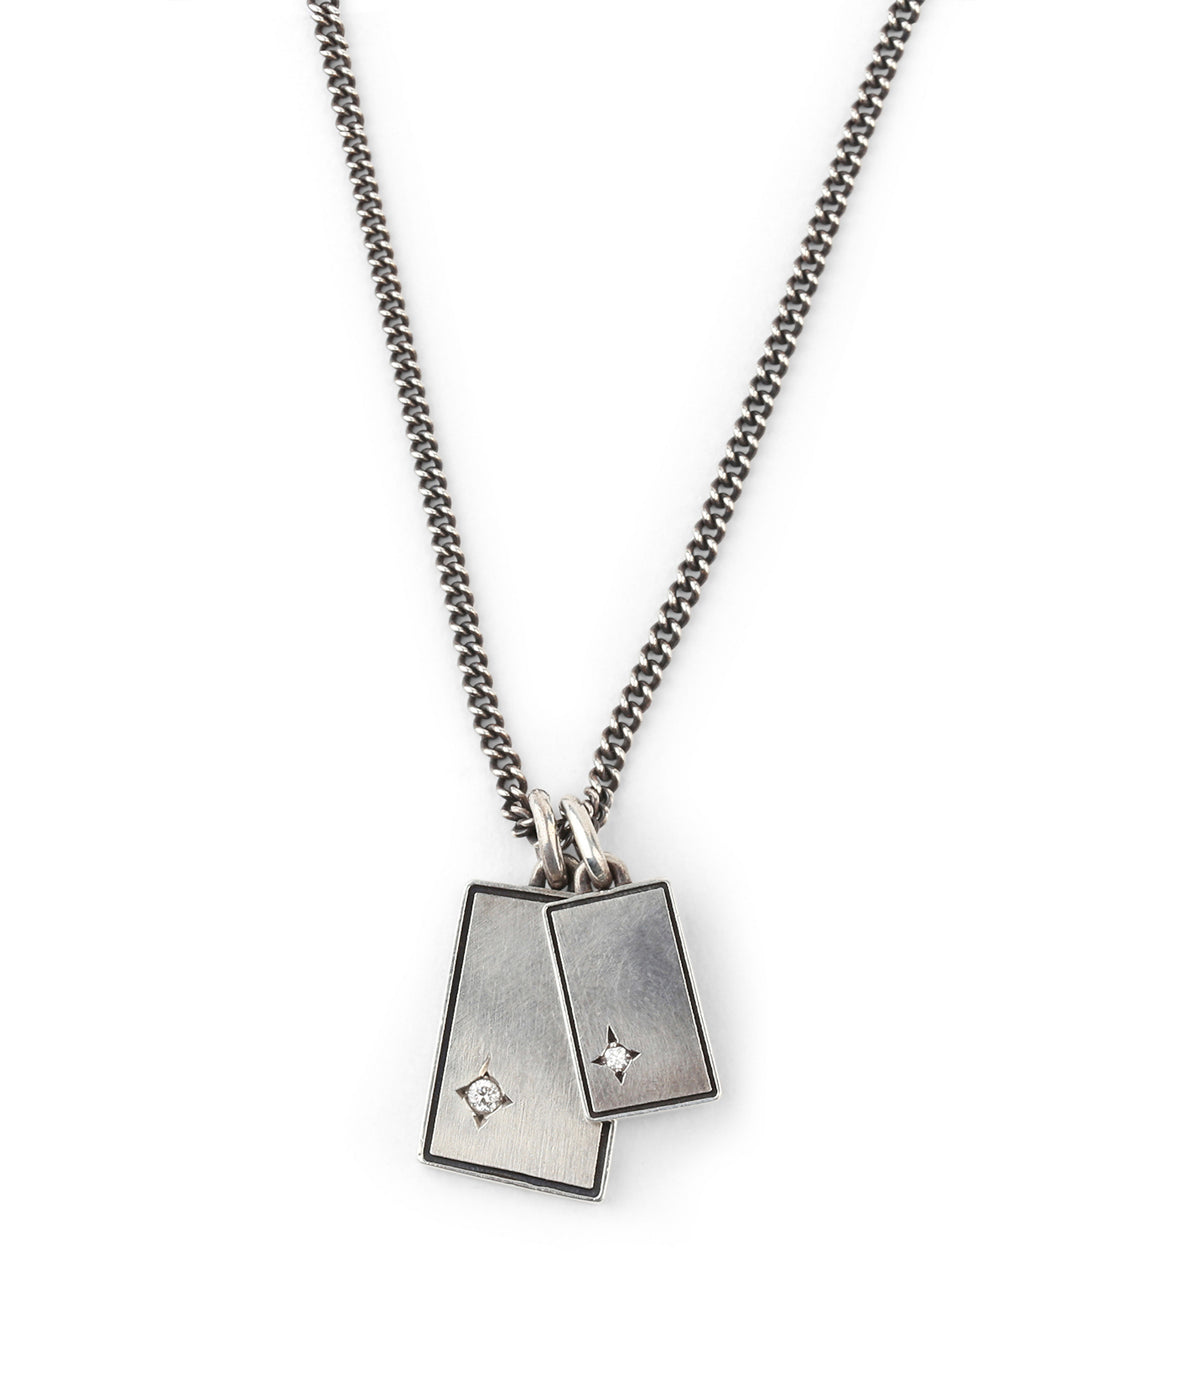 The Gudo Diamond Square Necklace in Silver